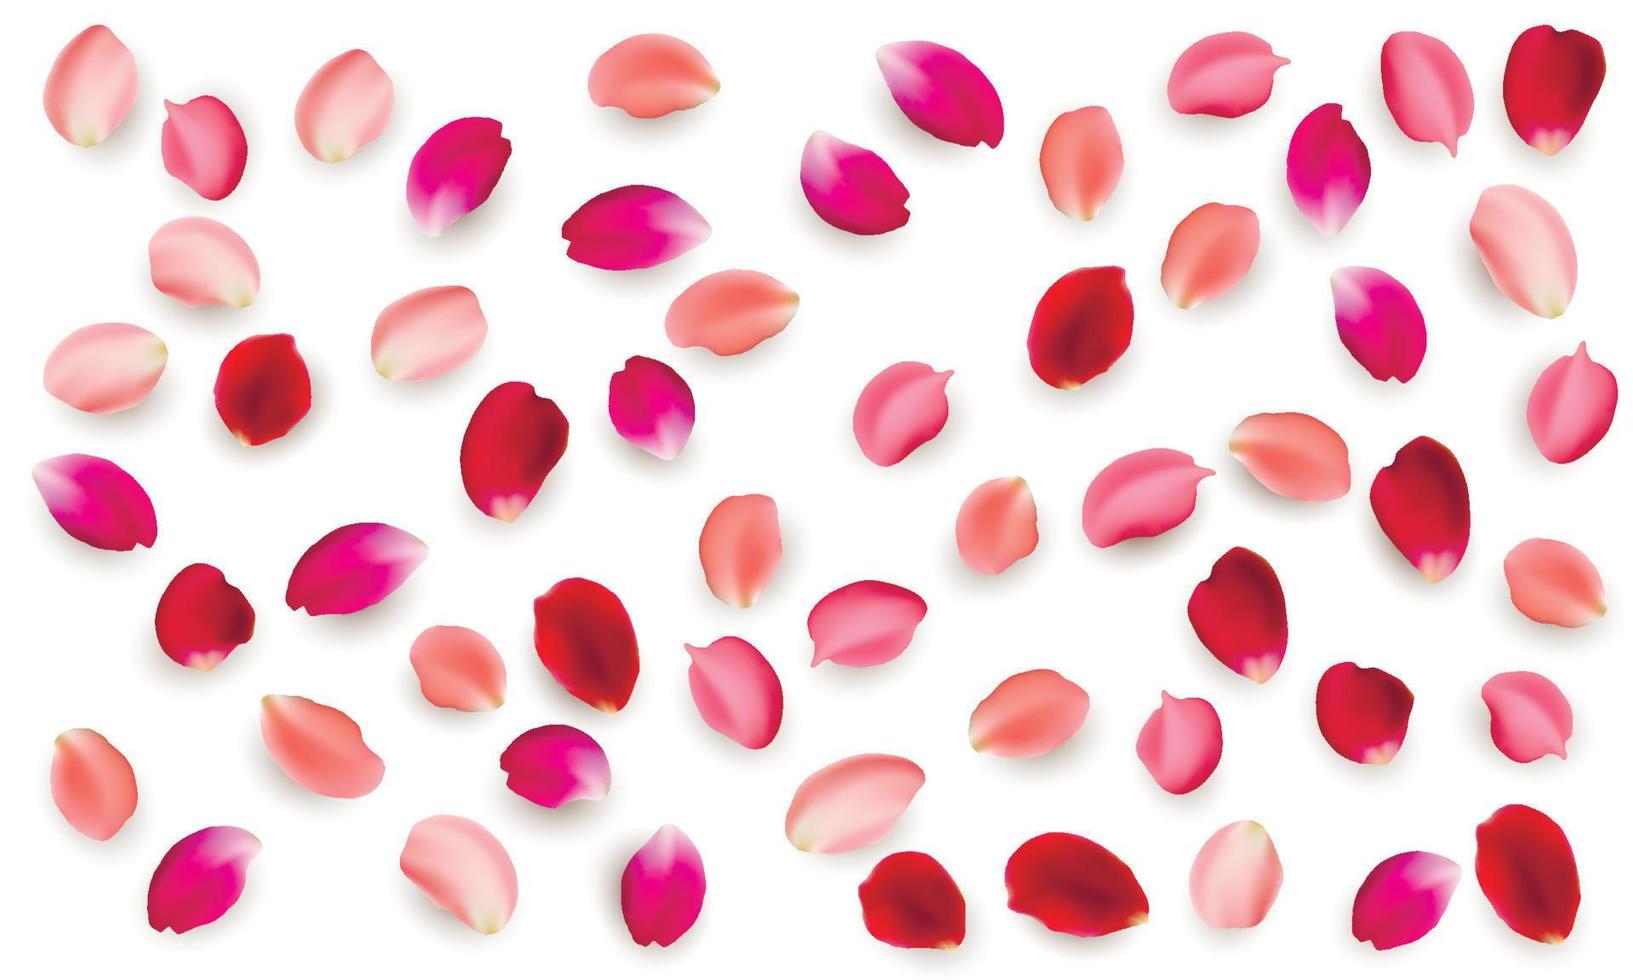 realistische vector-elementen set rozenblaadjes. rode bloemblaadjes van rozenbloem vector